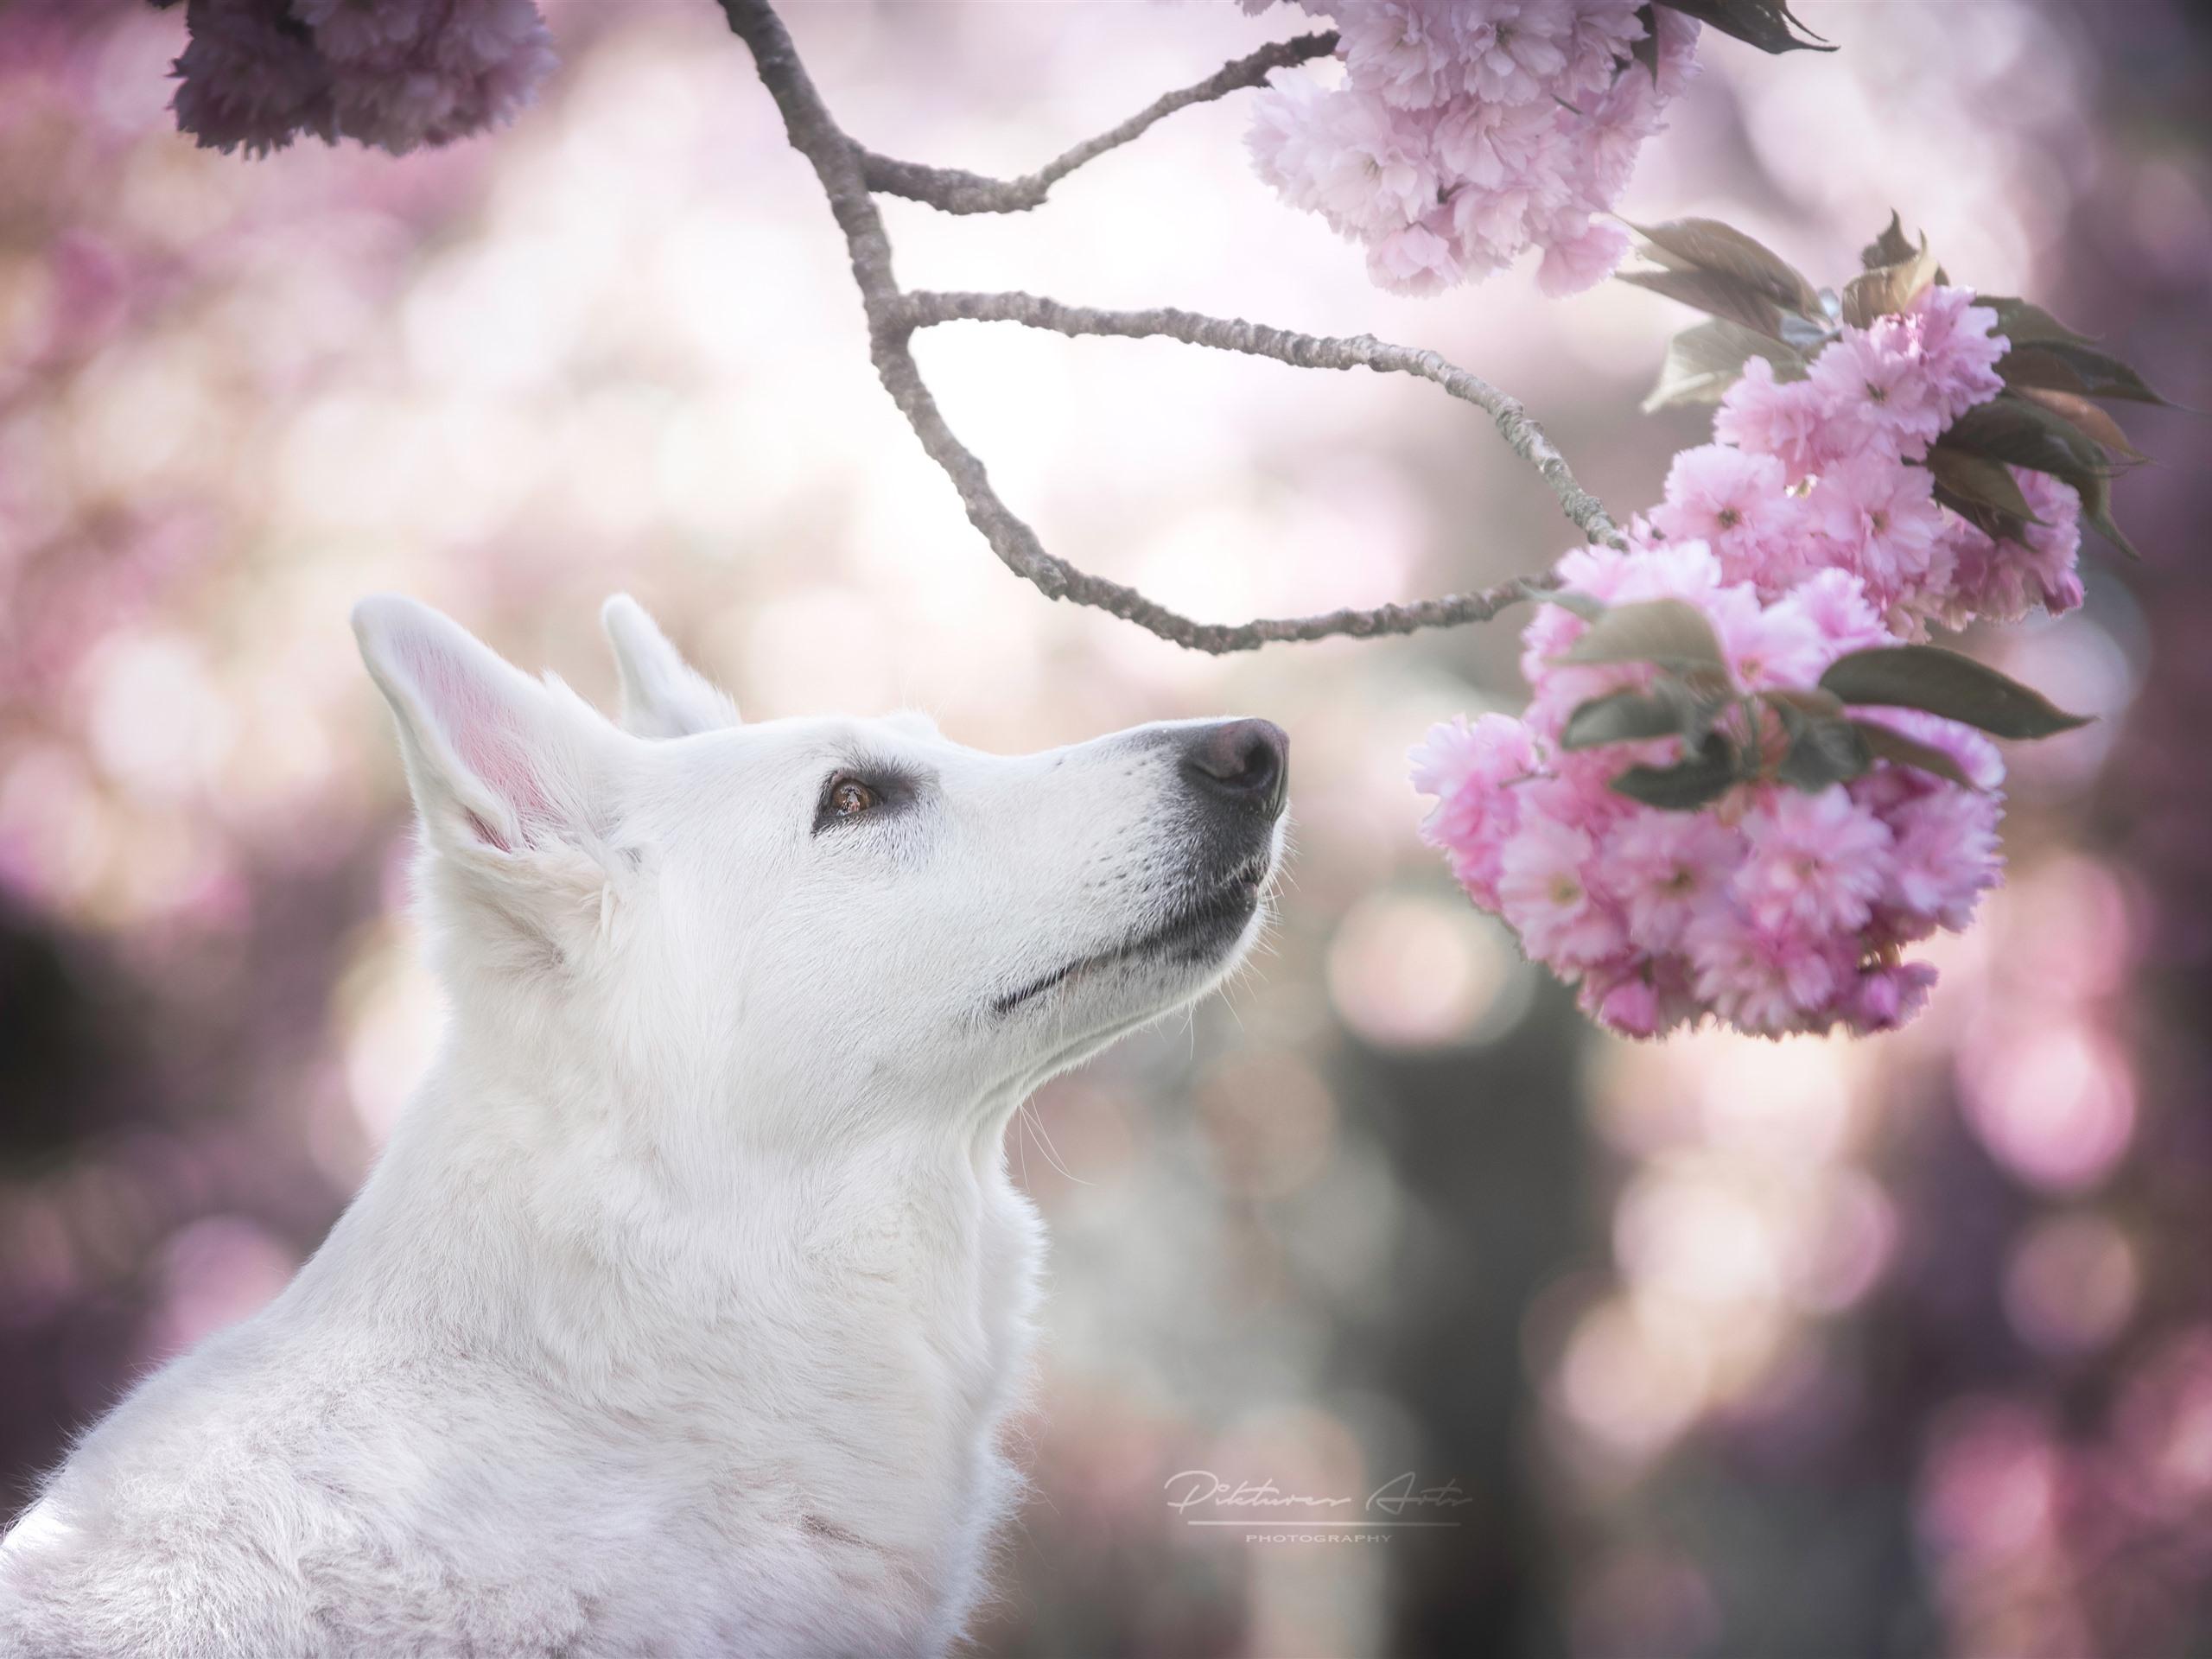 Wallpaper White dog, head, pink sakura bloom 5120x2880 UHD 5K